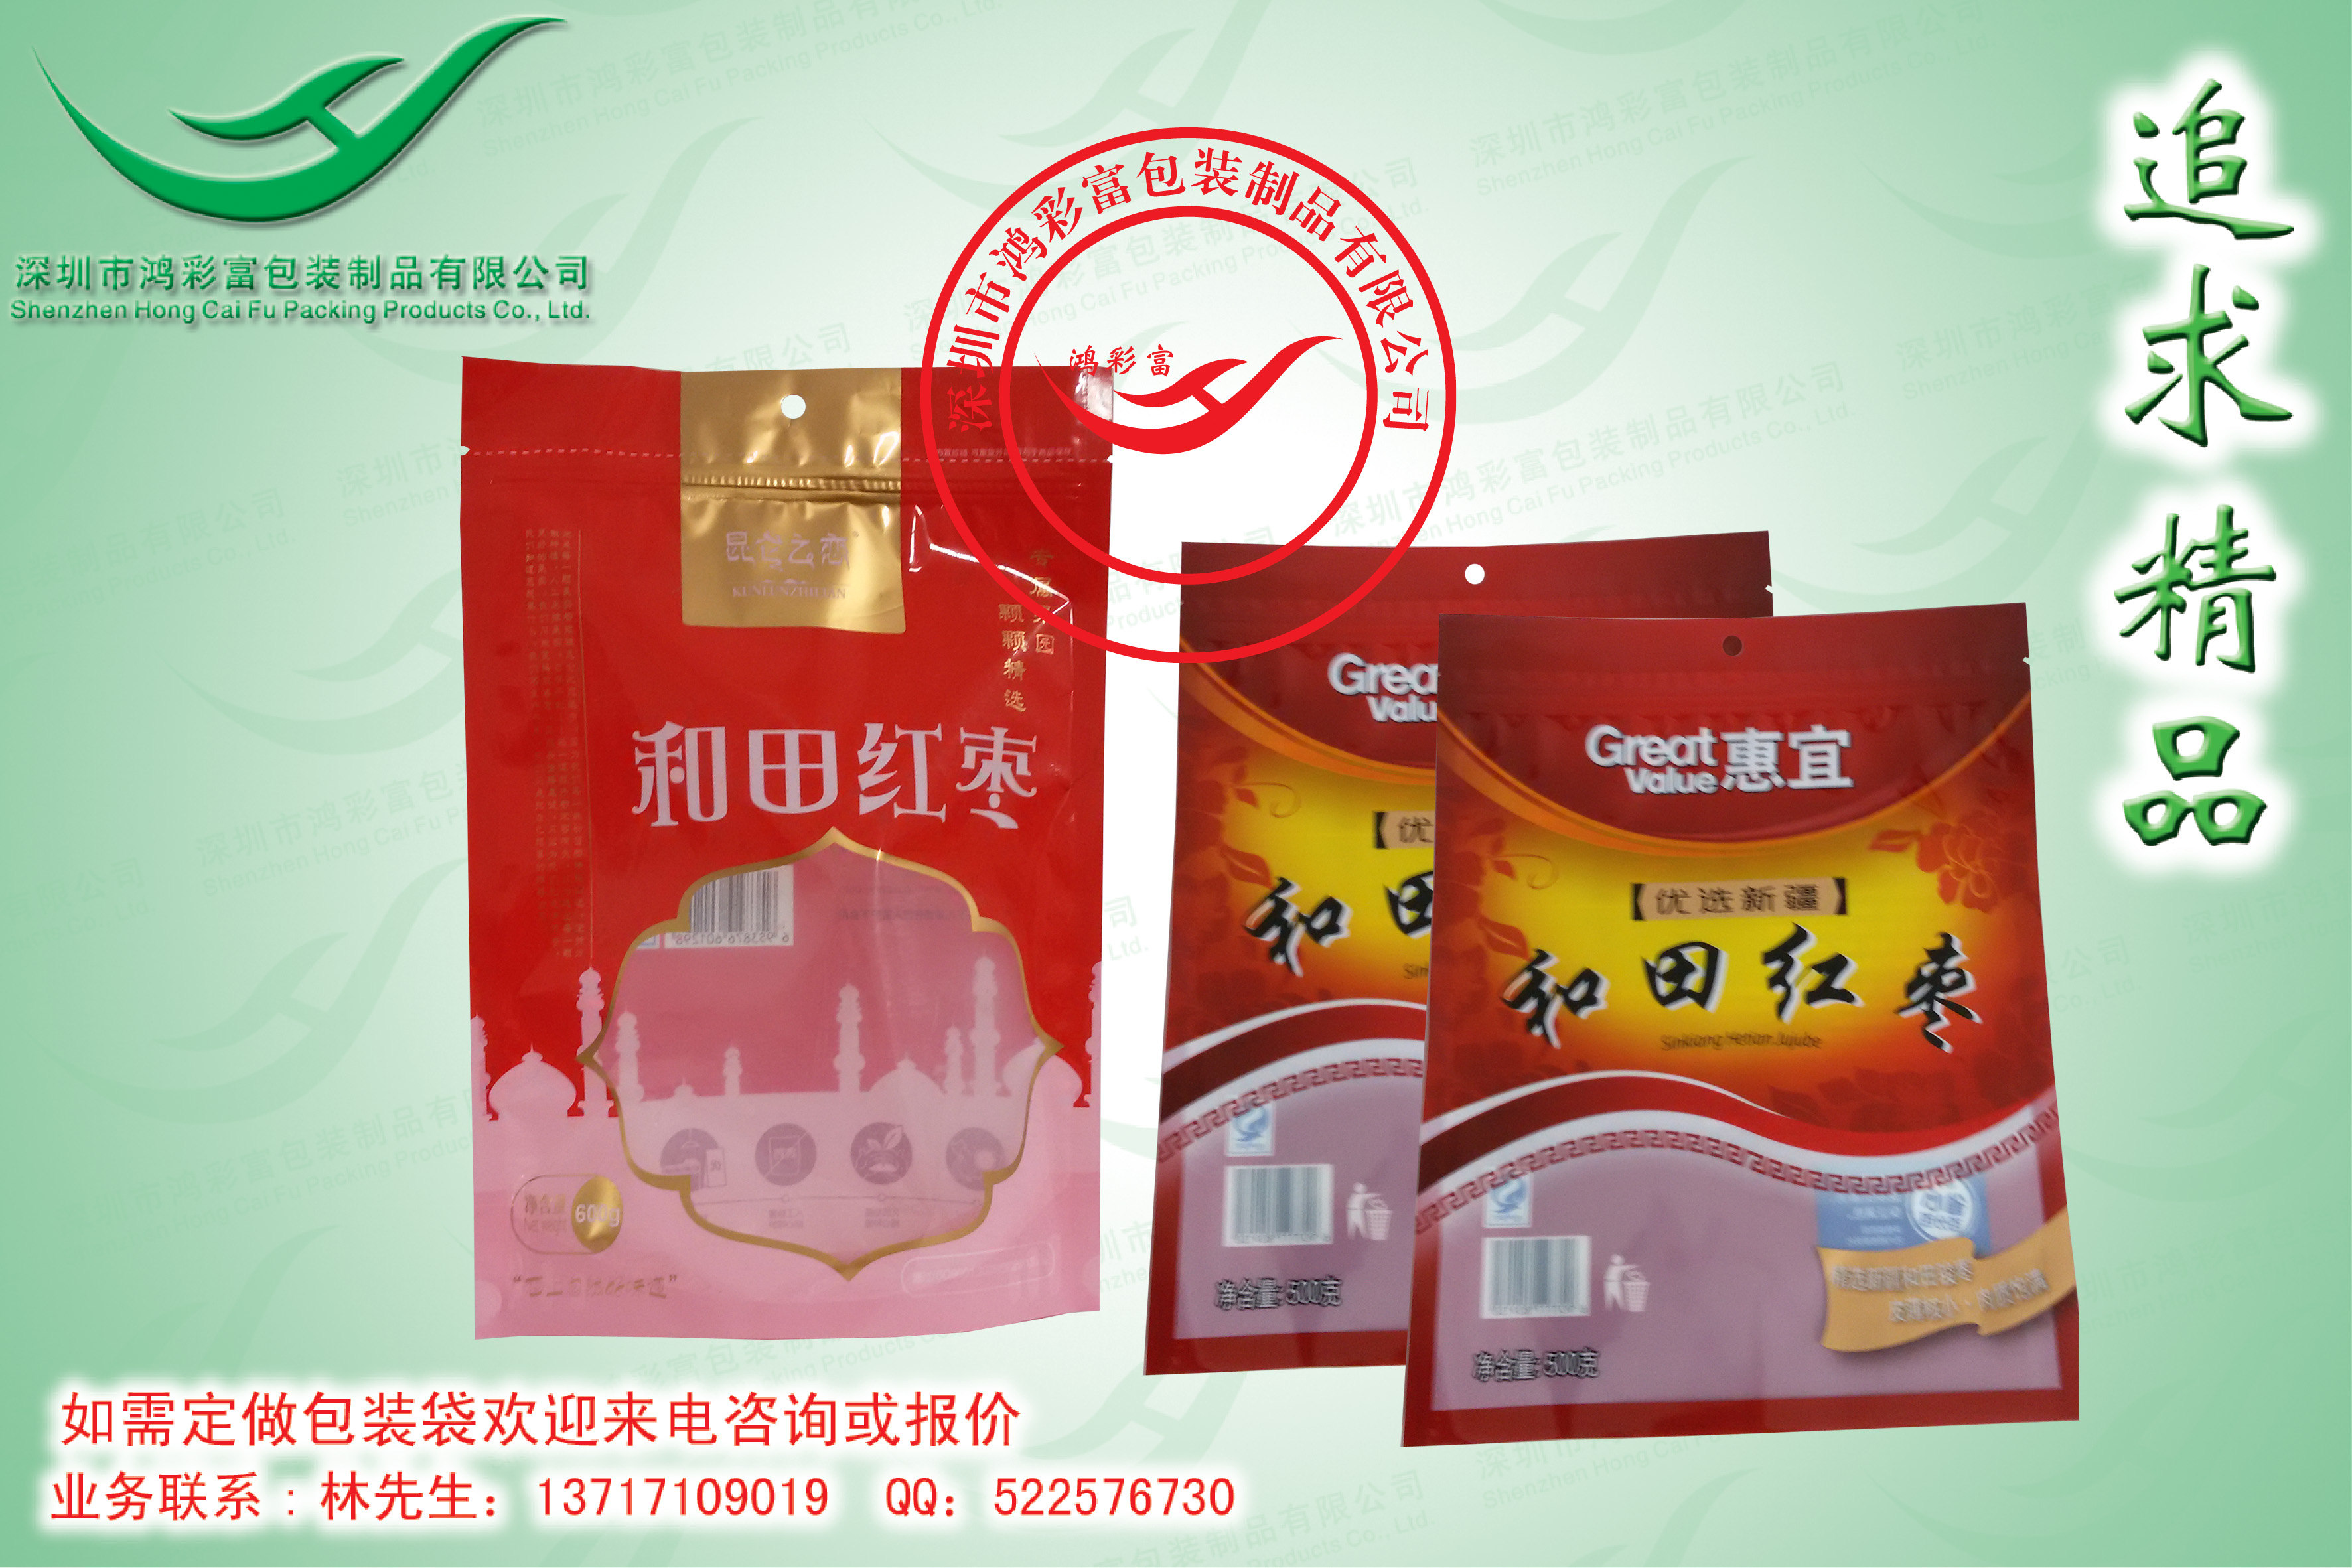 供应用于食品包装袋的深圳干果包装袋、宁夏枸杞包装袋、和田红枣包装袋、红枣片包装袋